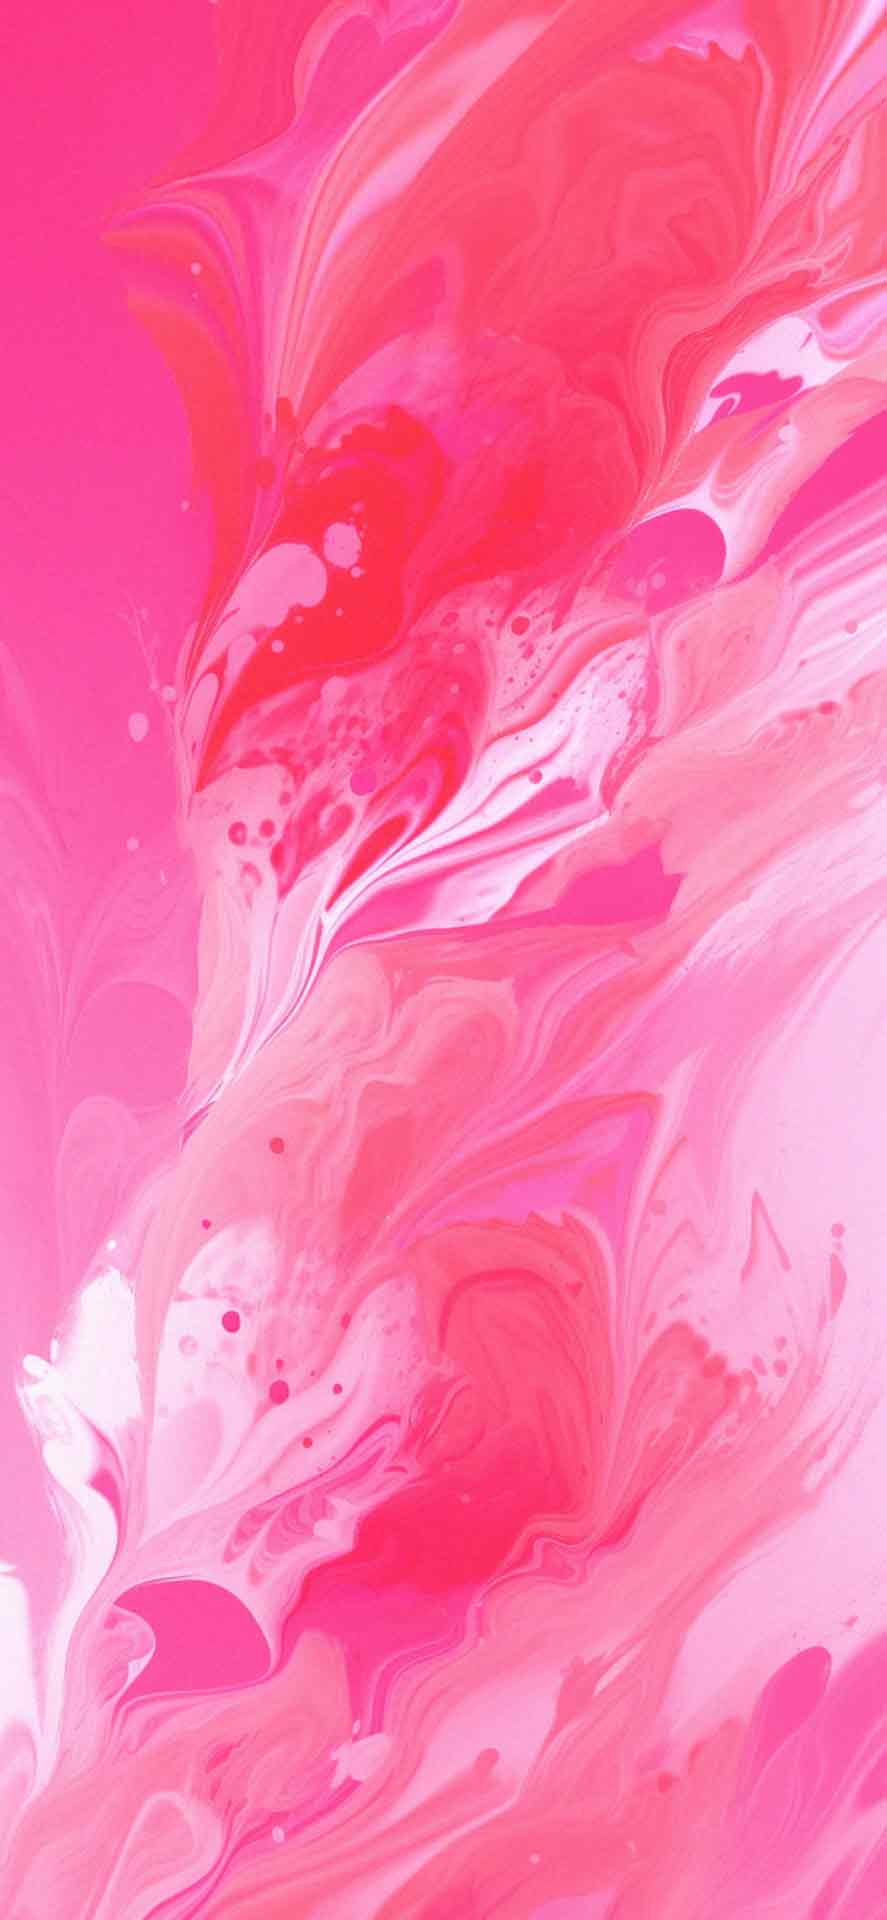 抽象粉红色美学壁纸